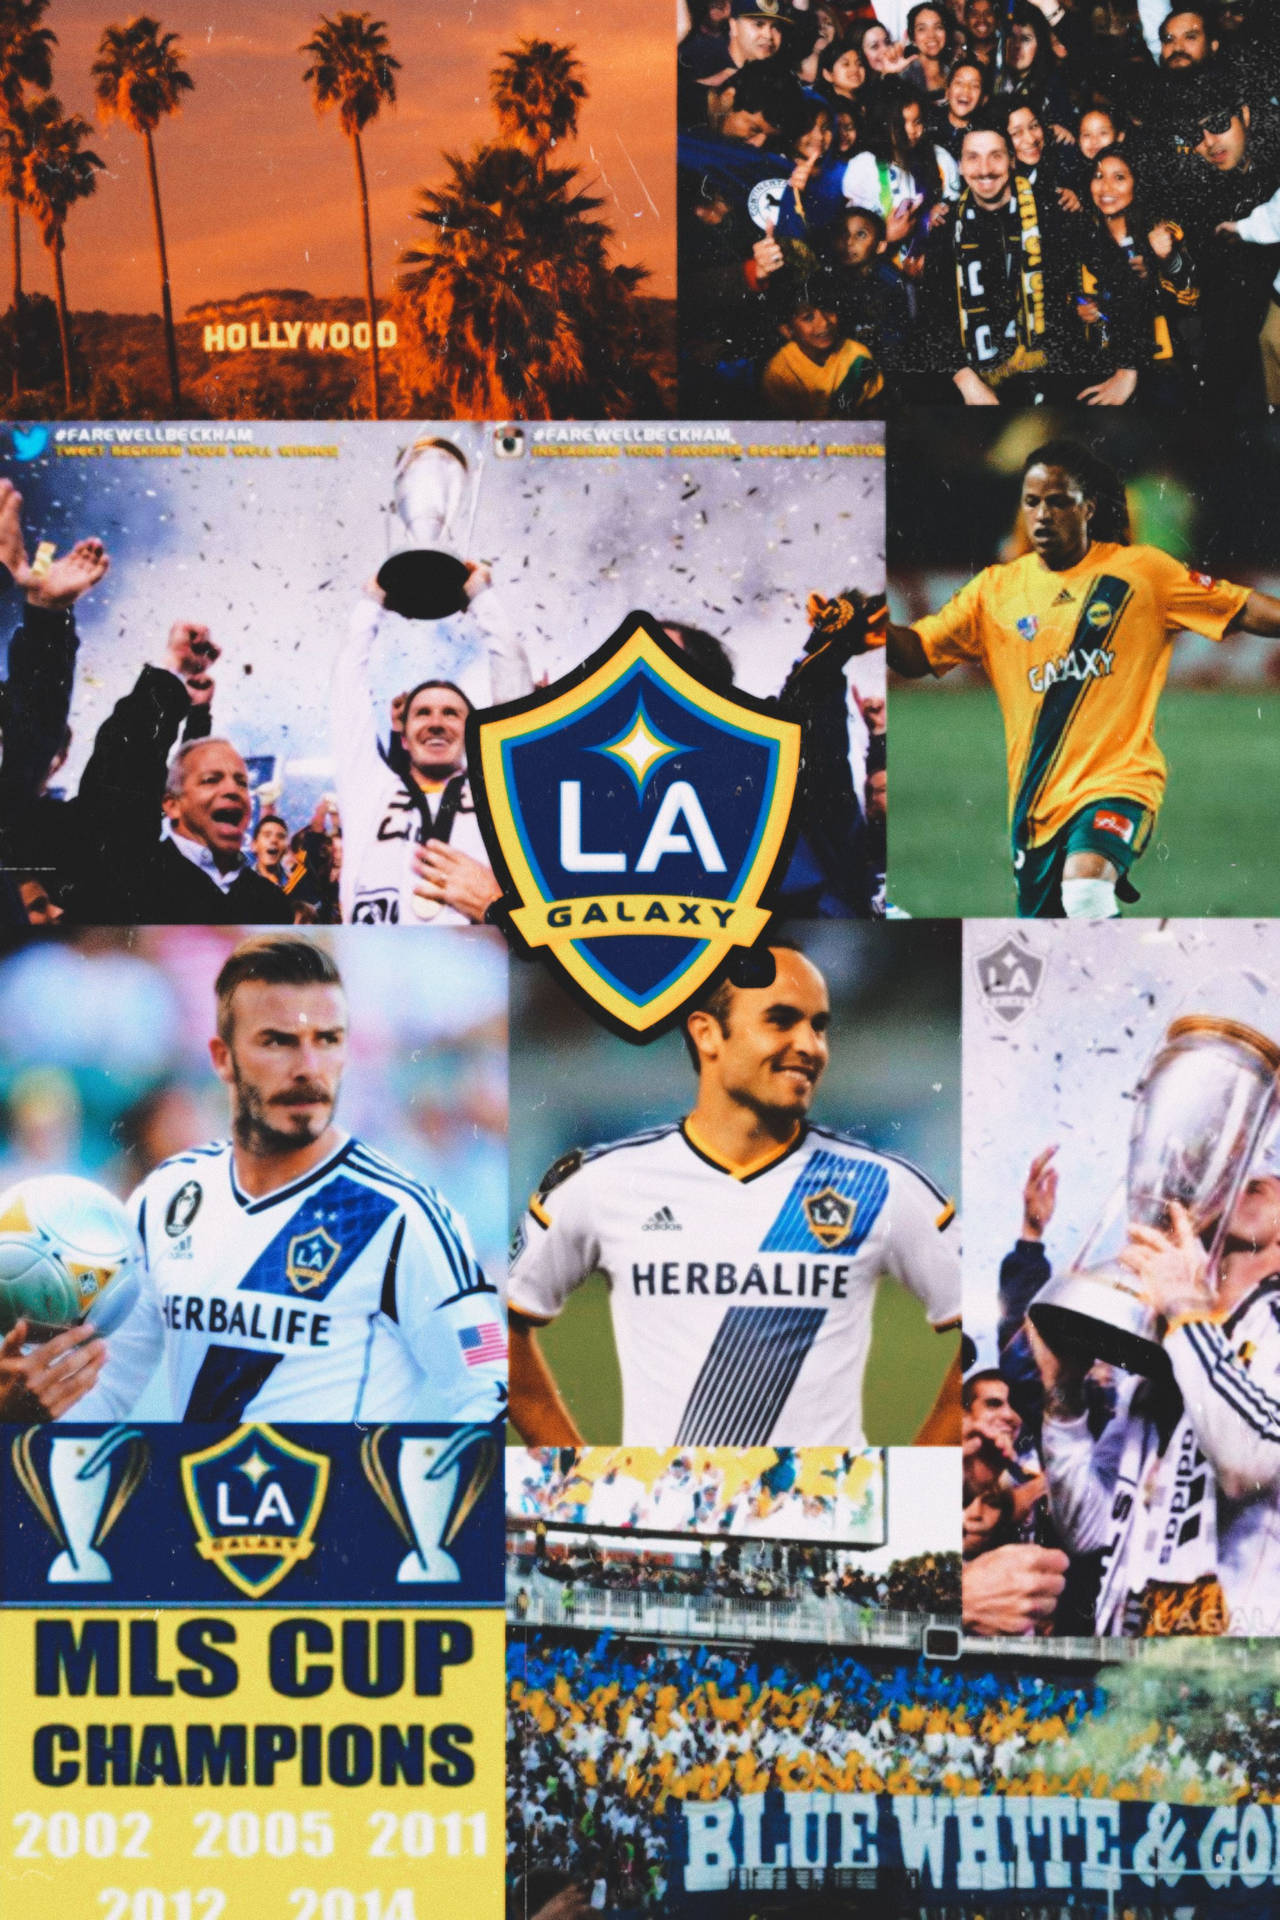 Lagalaxy Fußballverein Foto Collage Wallpaper